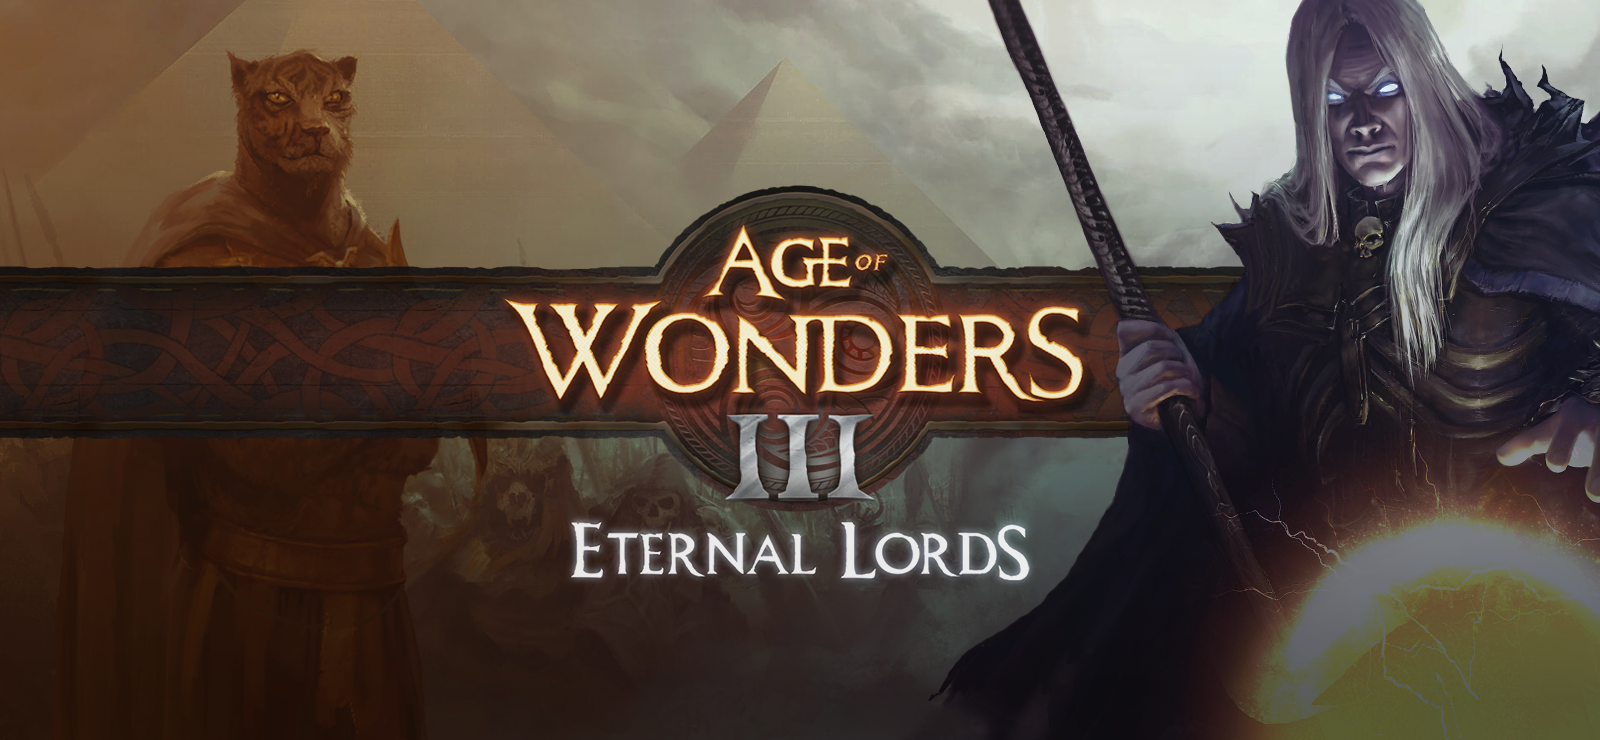 Age Of Wonders 3 - Eternal Lords